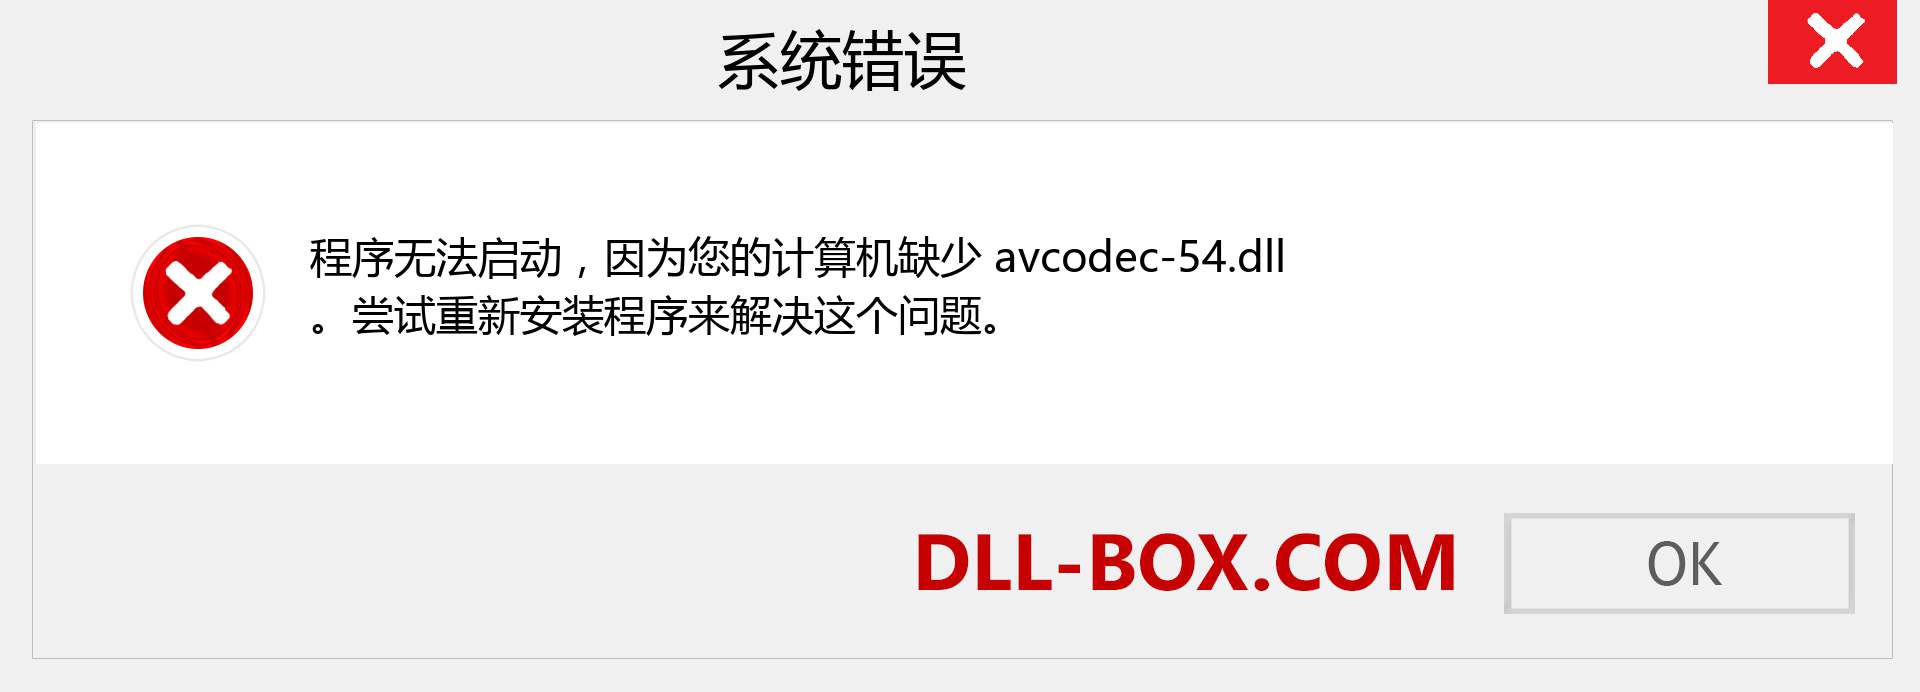 avcodec-54.dll 文件丢失？。 适用于 Windows 7、8、10 的下载 - 修复 Windows、照片、图像上的 avcodec-54 dll 丢失错误